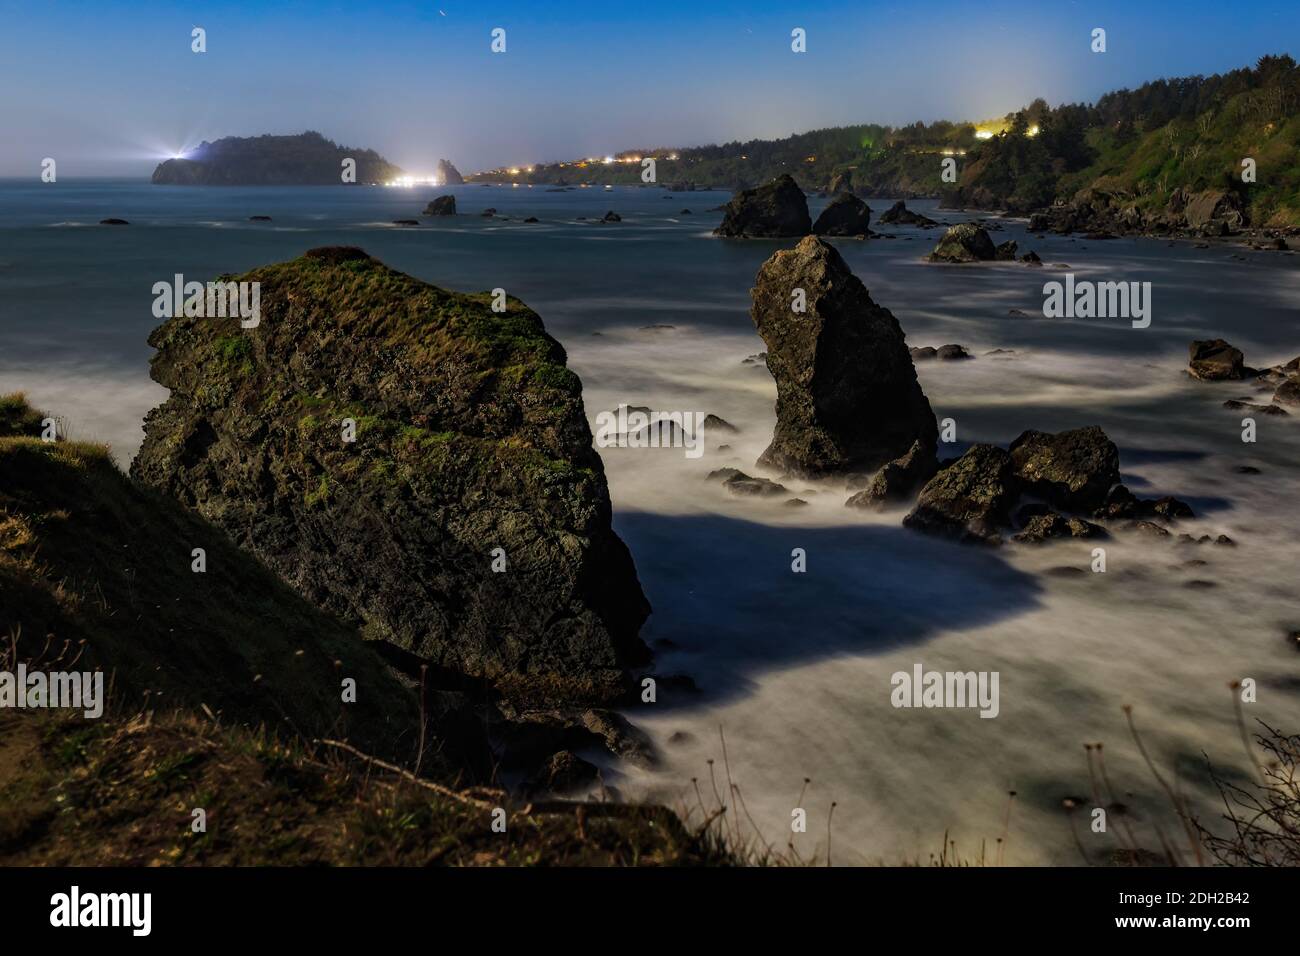 Mondschein Nacht Bild von einem Rocky Beach, Nordkalifornien Küste Stockfoto